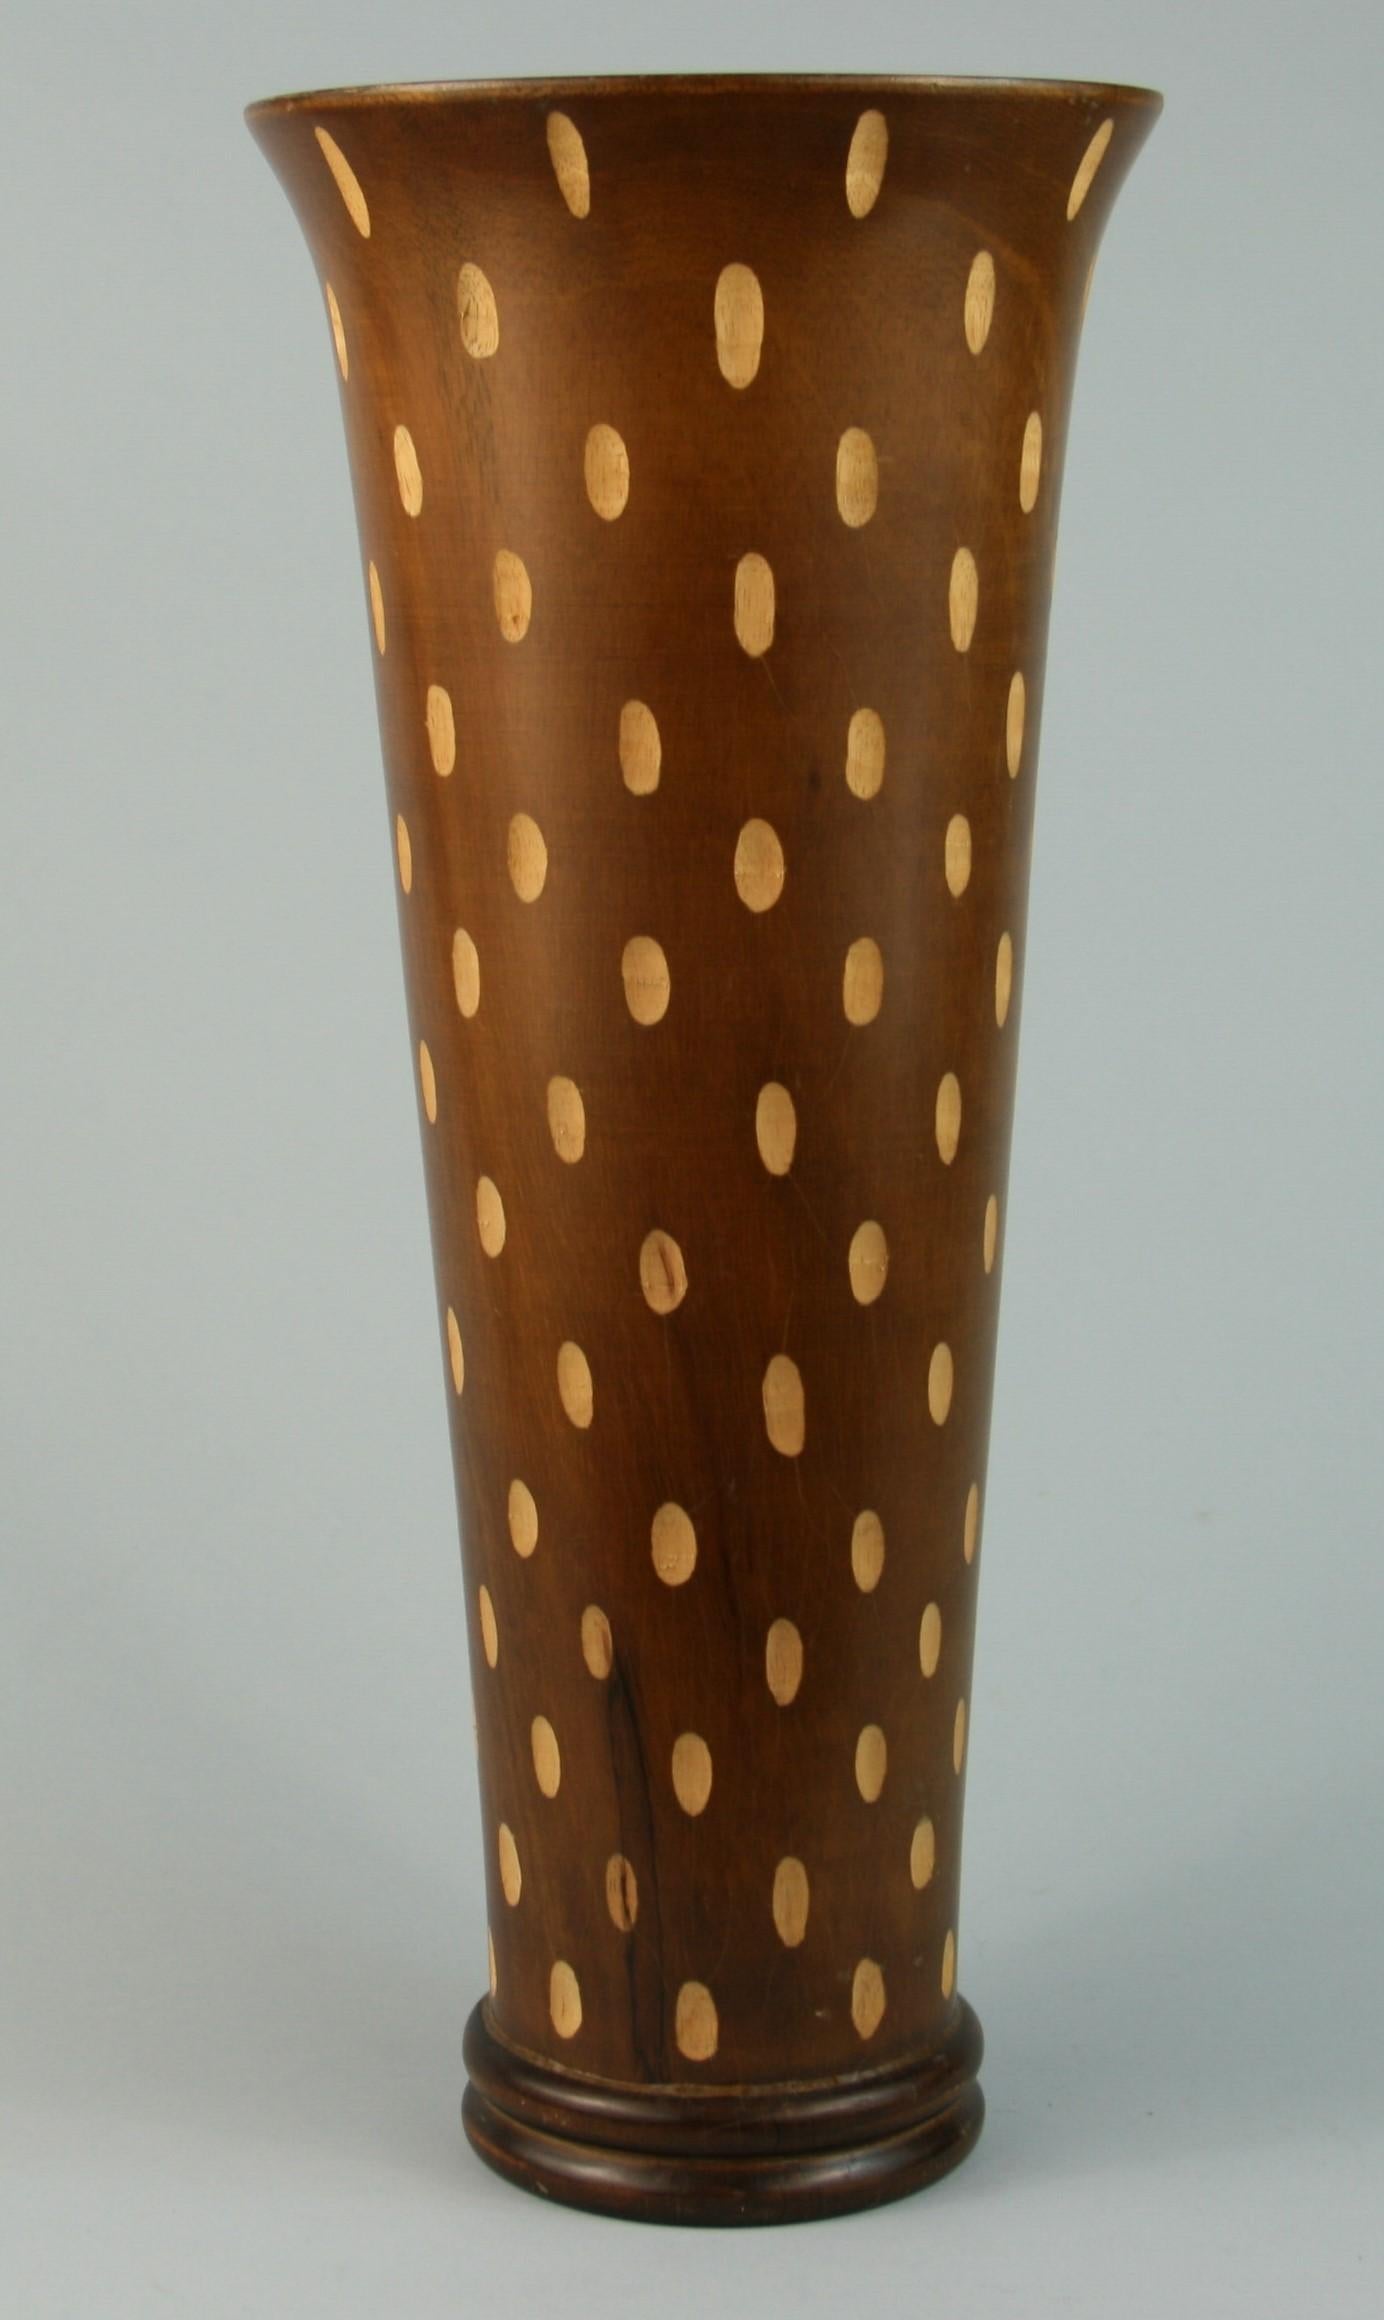 3-615 Japanese Art Deco style hand turned wood vase.